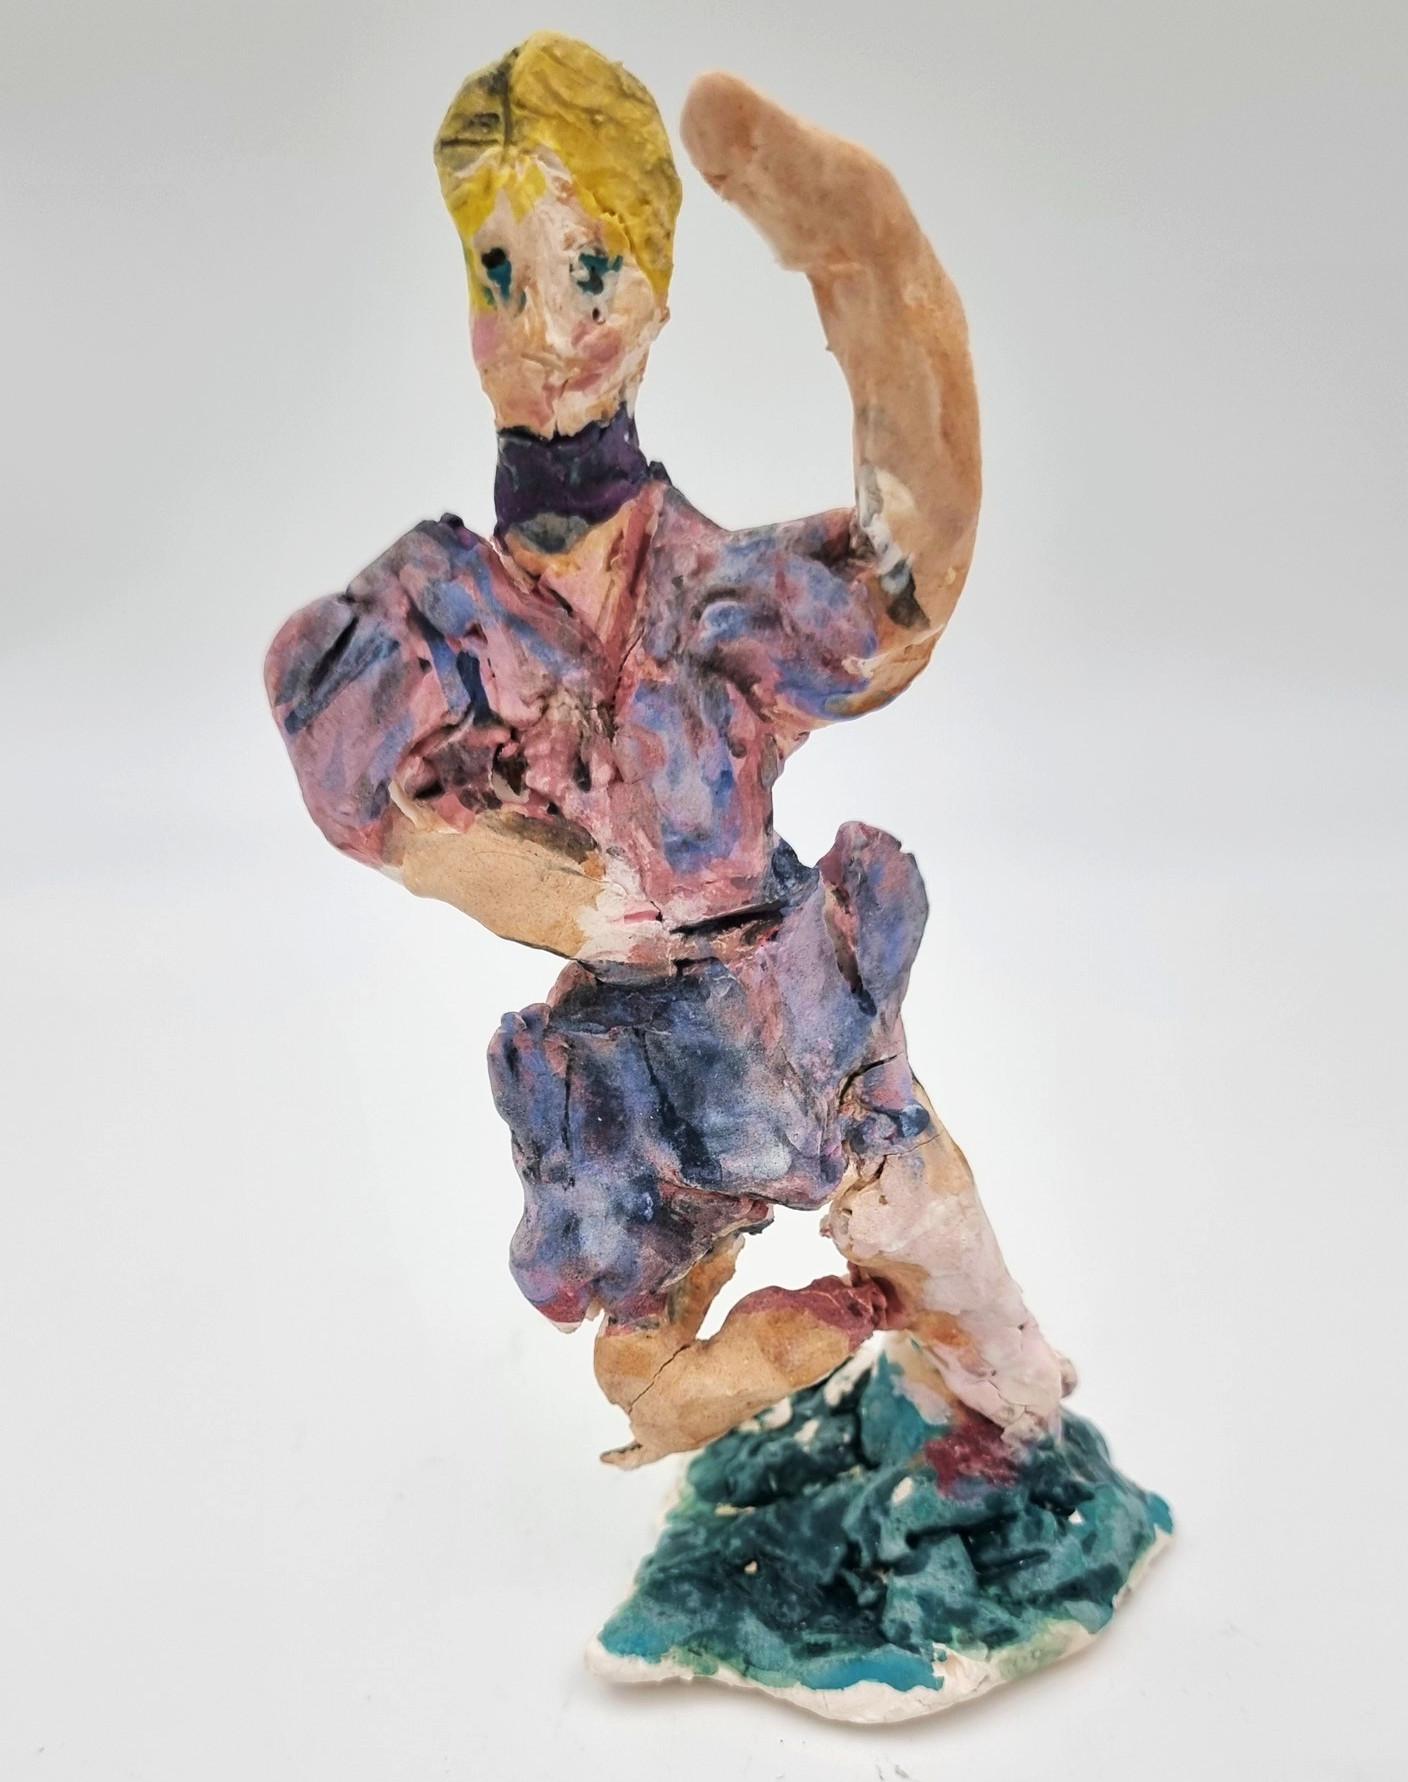 Purple Ballarina (Circus, Whimsical, Viola Frey, Cirque du Soleil, Ringling)  - Sculpture by Ann Rothman